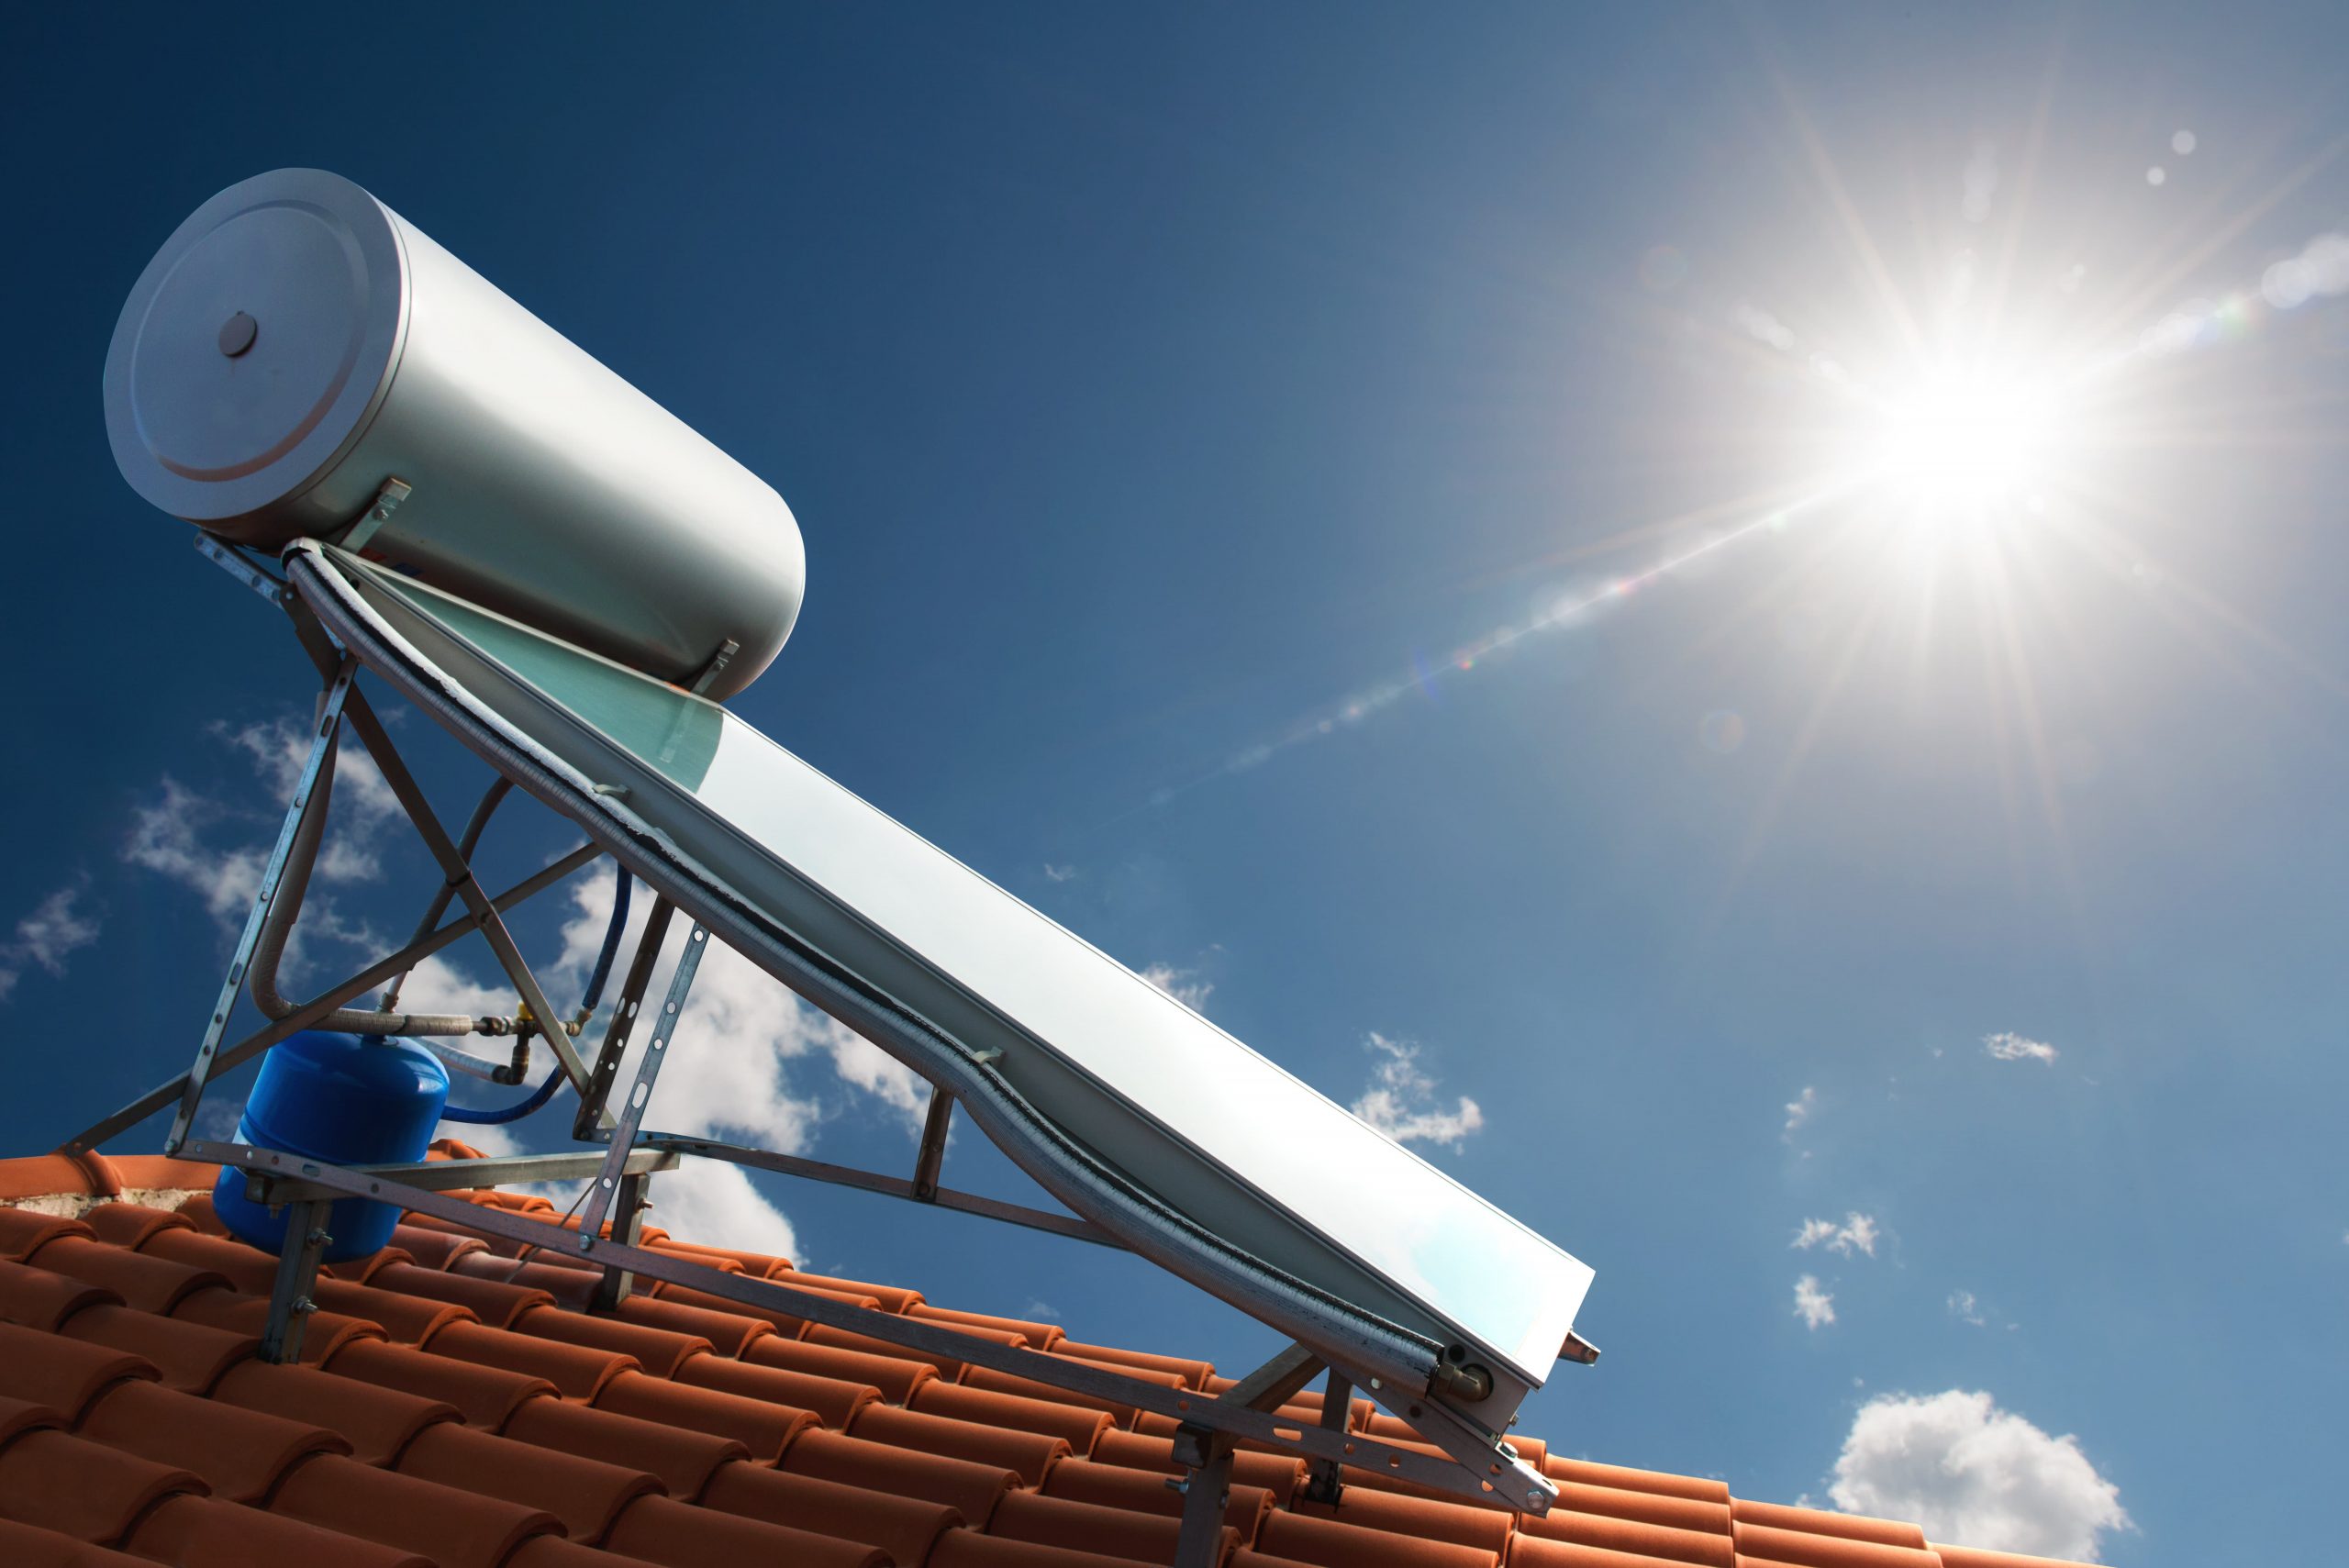 Ποιες είναι οι προϋποθέσεις για να λάβετε επιδότηση για εγκατάσταση ηλιακού θερμοσίφωνα